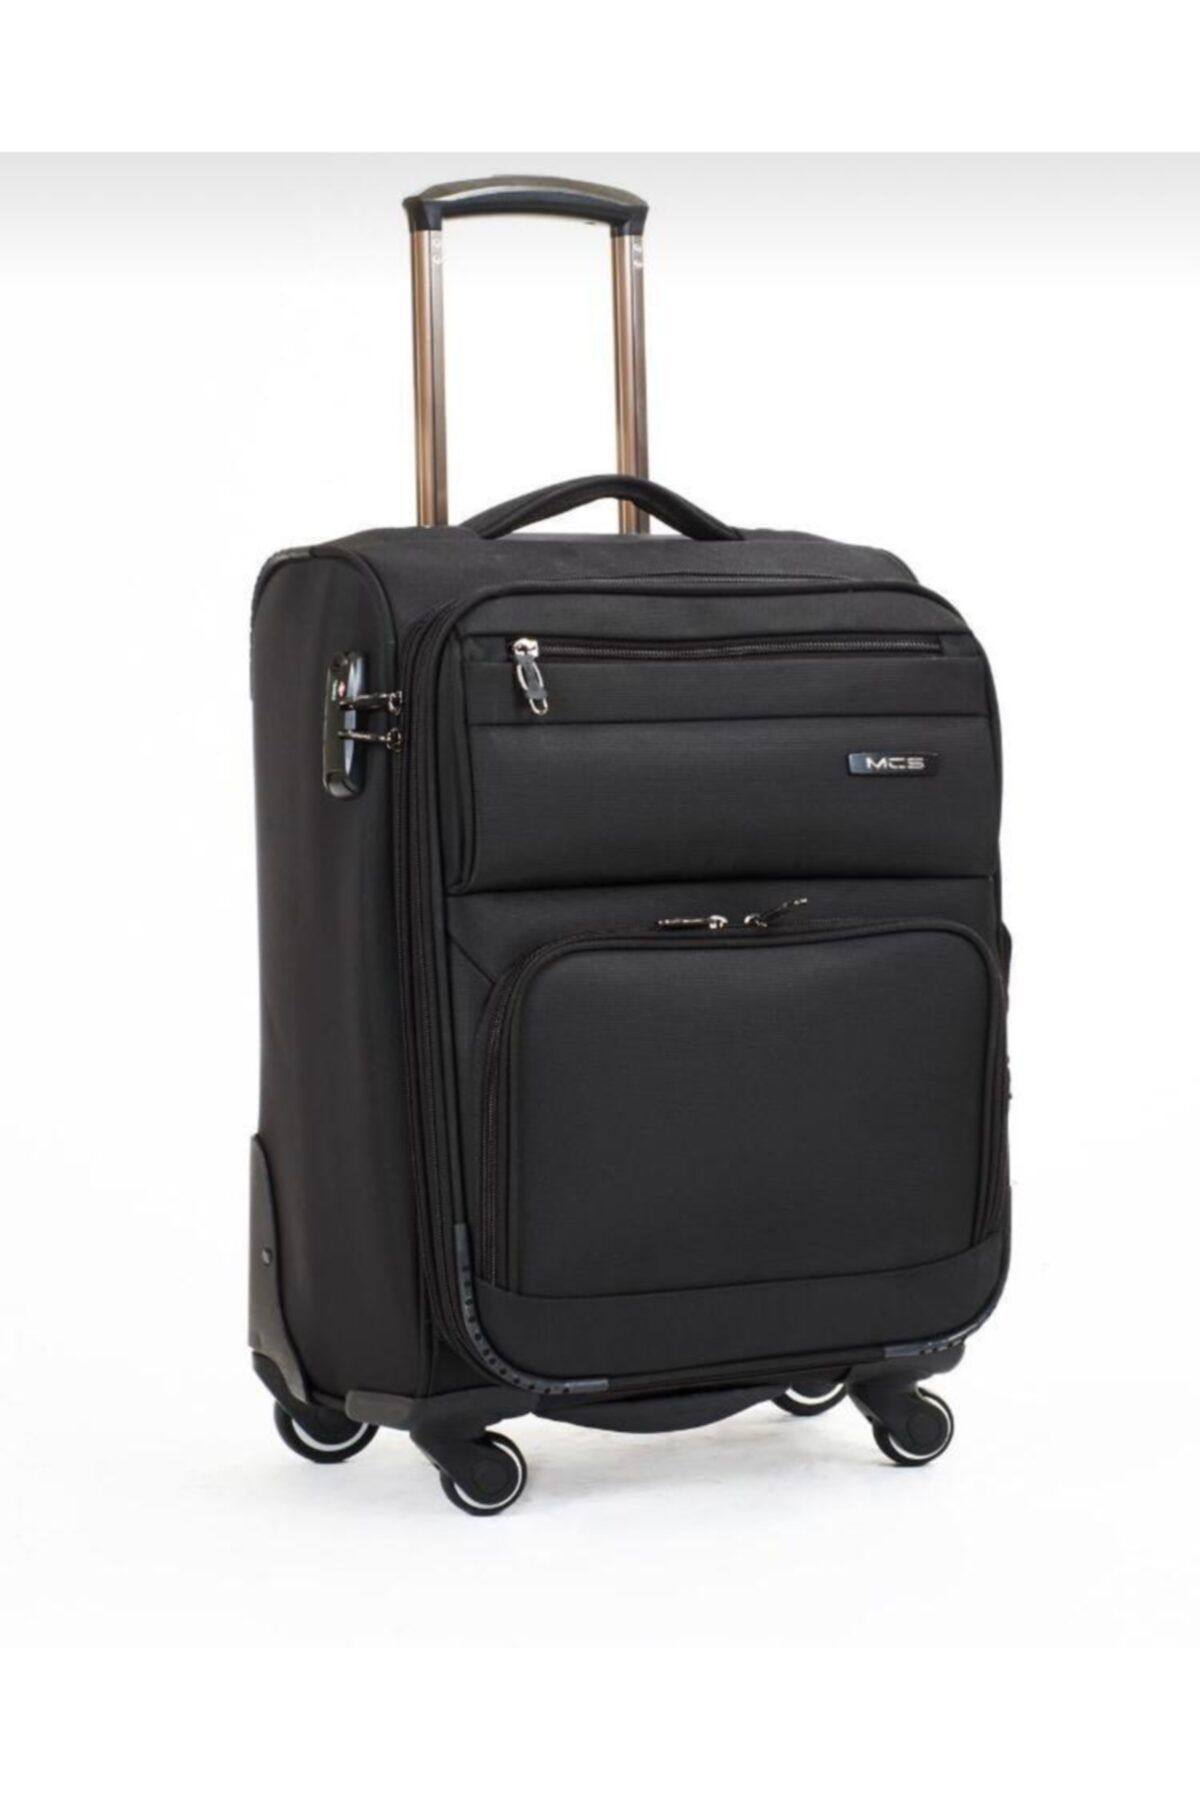 MÇS چمدان سایز کابین فابریک V117 لوکس ATA-MÇS